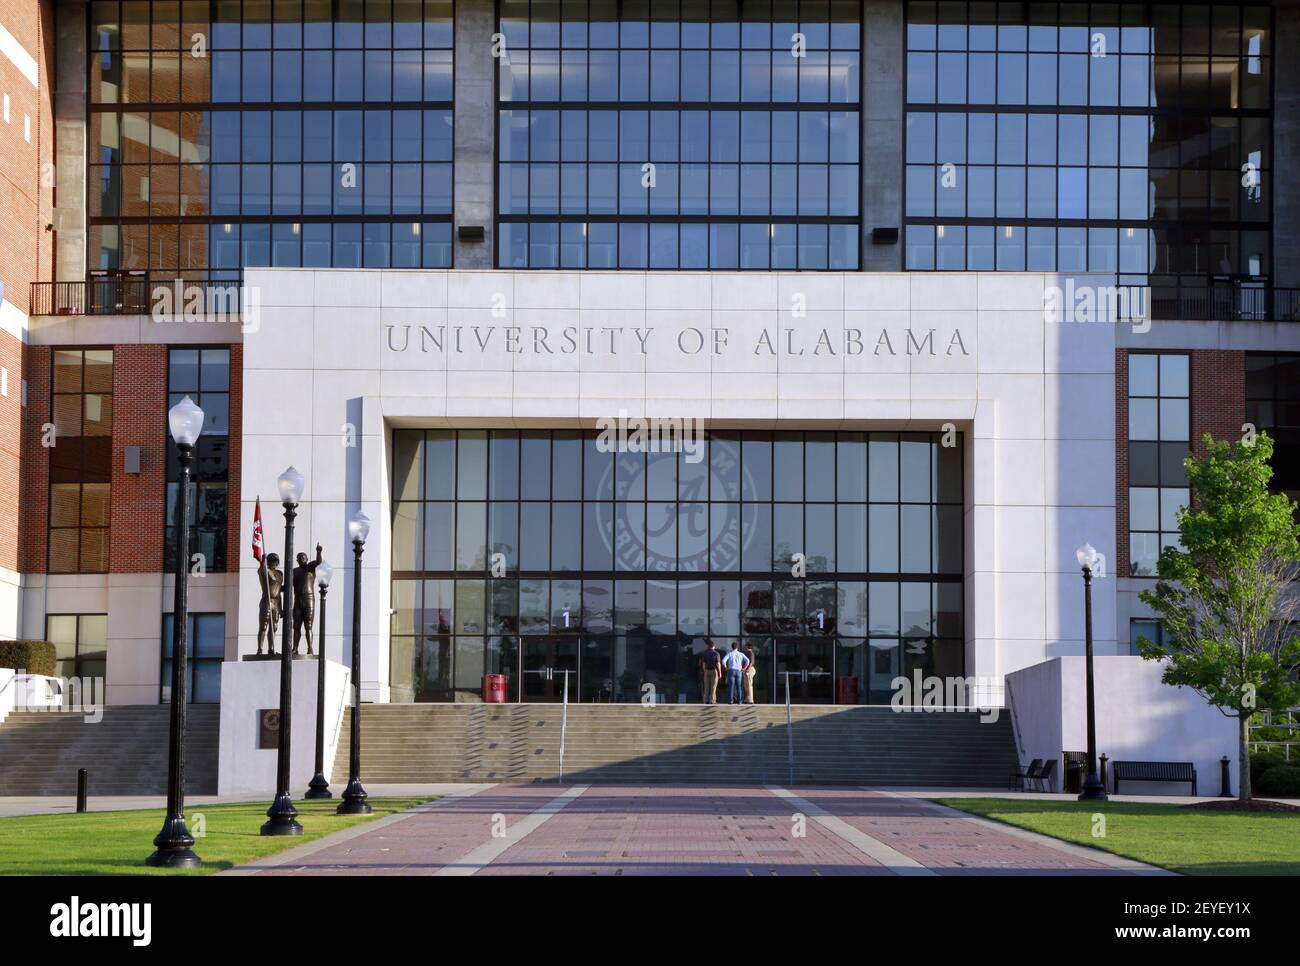 19 juin 2013. Université d'Alabama, Tuscaloosa, Alabama. Le stade Bryant-Denny, qui abrite le Crimson Tide, équipe gagnante du championnat SEC de l'université d'Alabama. (Photo de Charlie Varley/Sipa USA) Banque D'Images